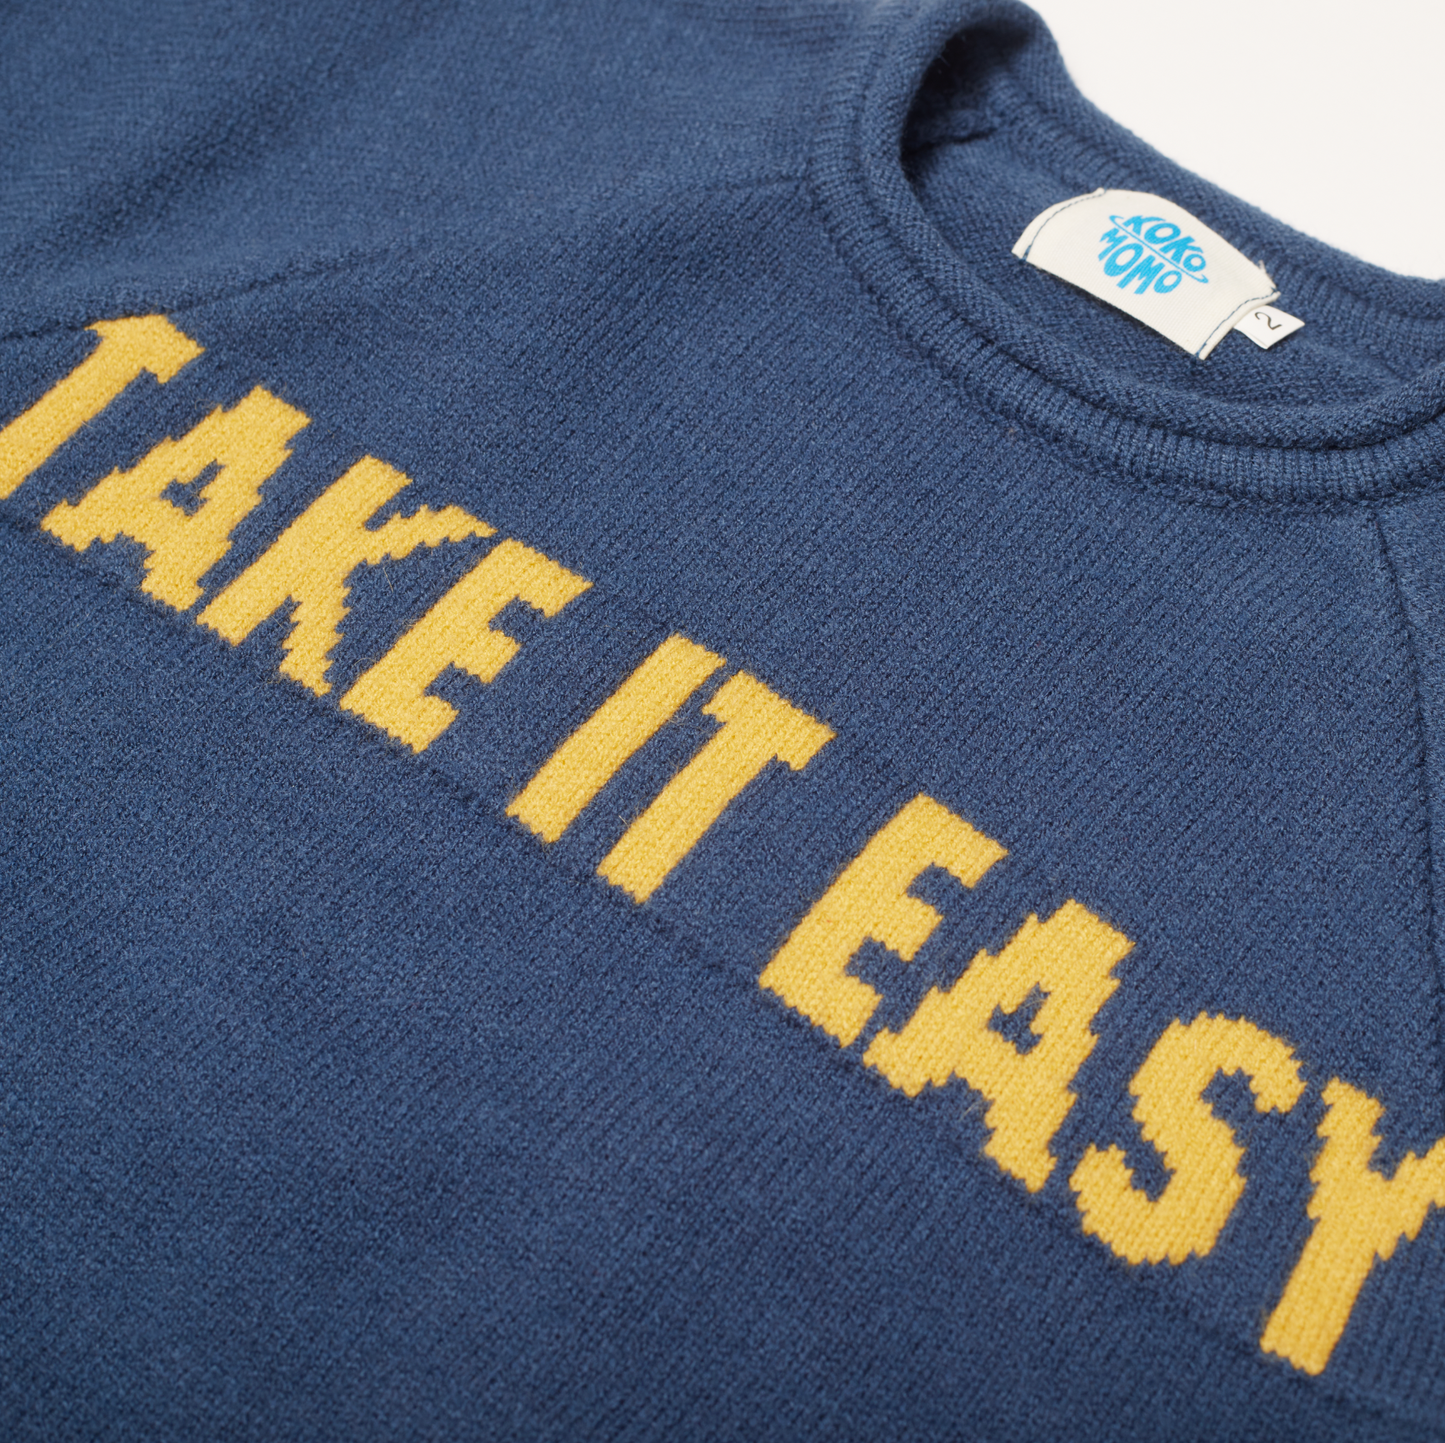 Take It Easy Sweater - Blue